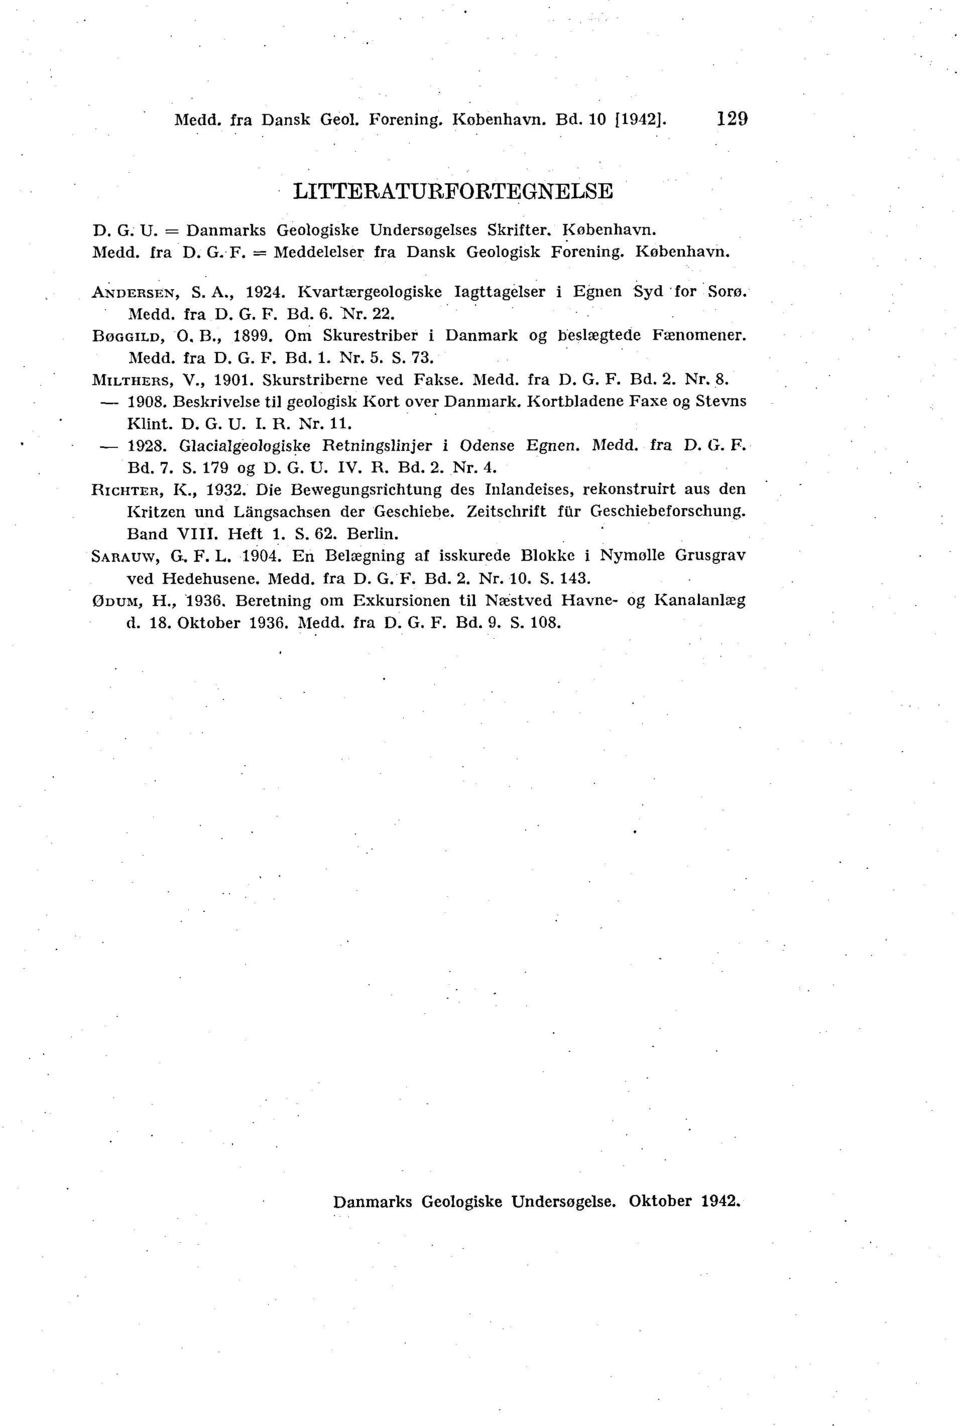 Medd. fra D. G. F. Bd. 1. Nr. 5. S. 73. MILTHERS, V., 1901. Skurstriberne ved Fakse. Medd. fra D. G. F. Bd. 2. Nr. 8. 1908. Beskrivelse til geologisk Kort over Danmark.